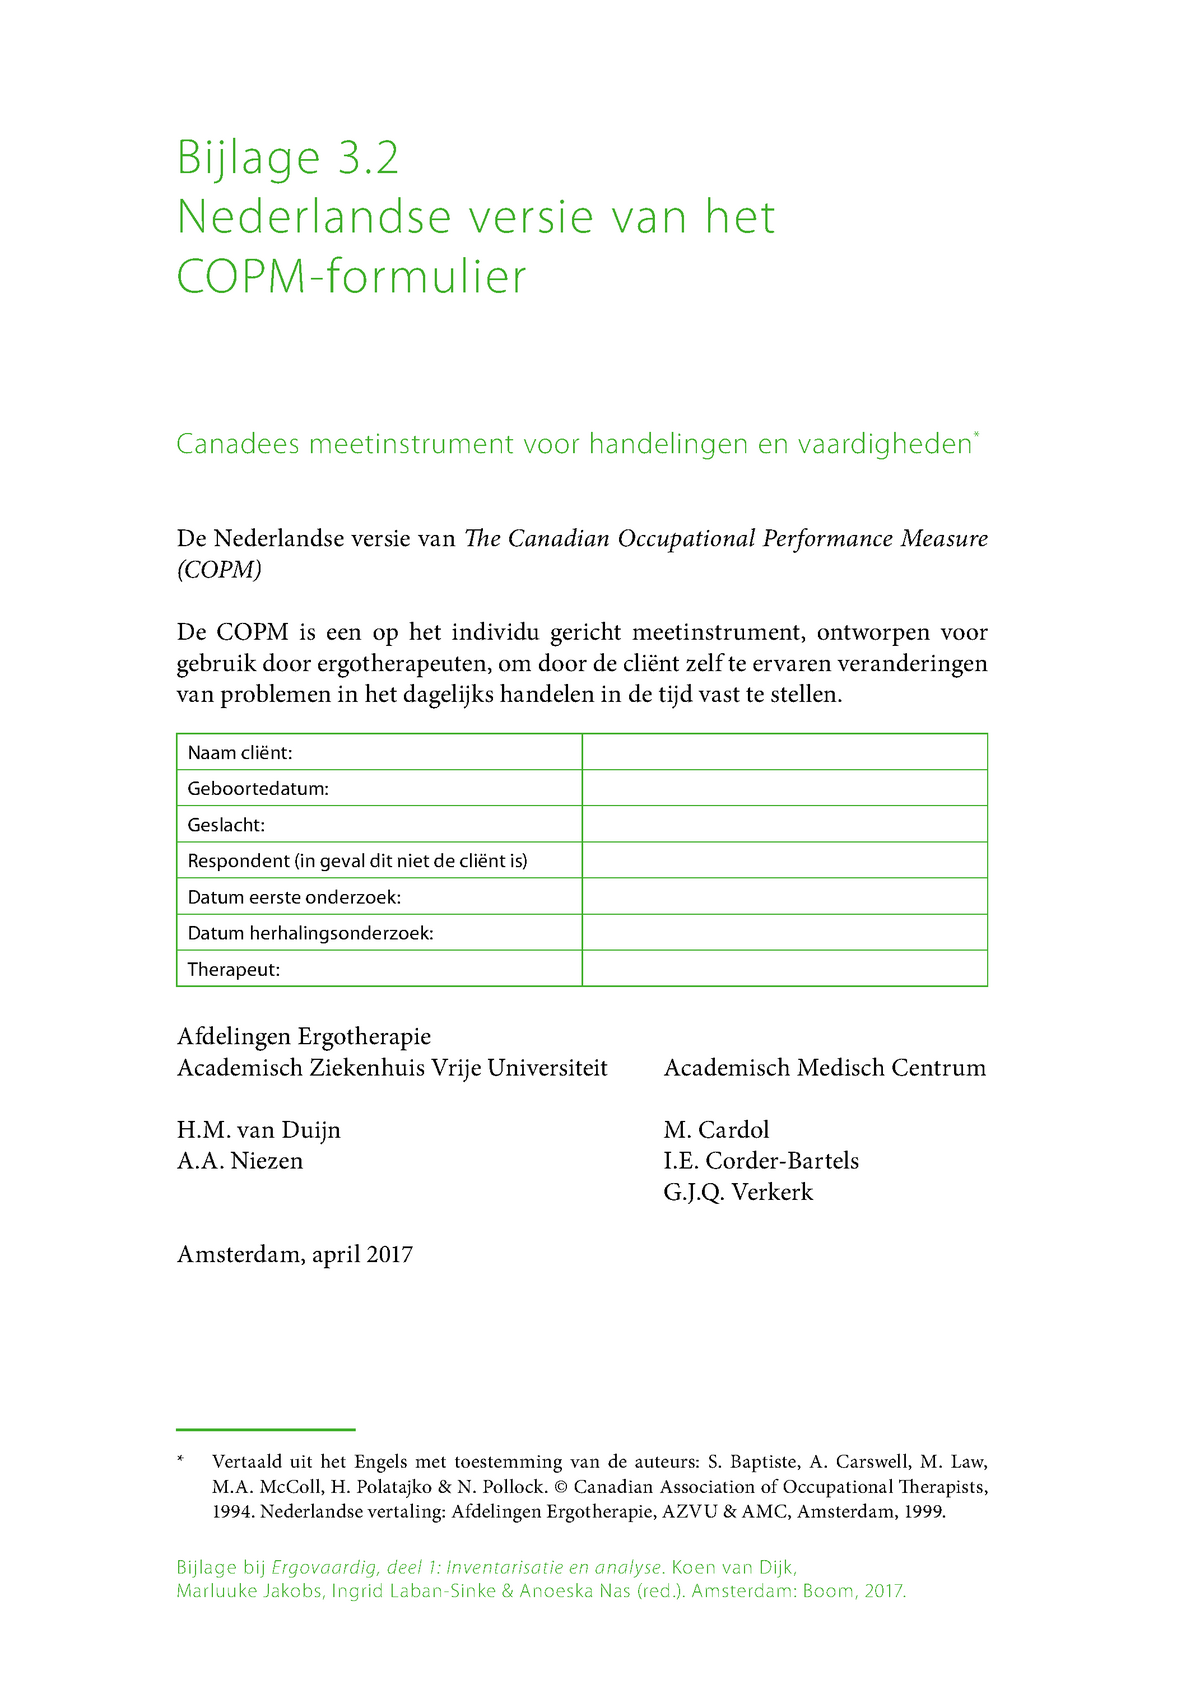 Copm assessment Bijlage bij Ergovaardig deel 1: Inventarisatie en